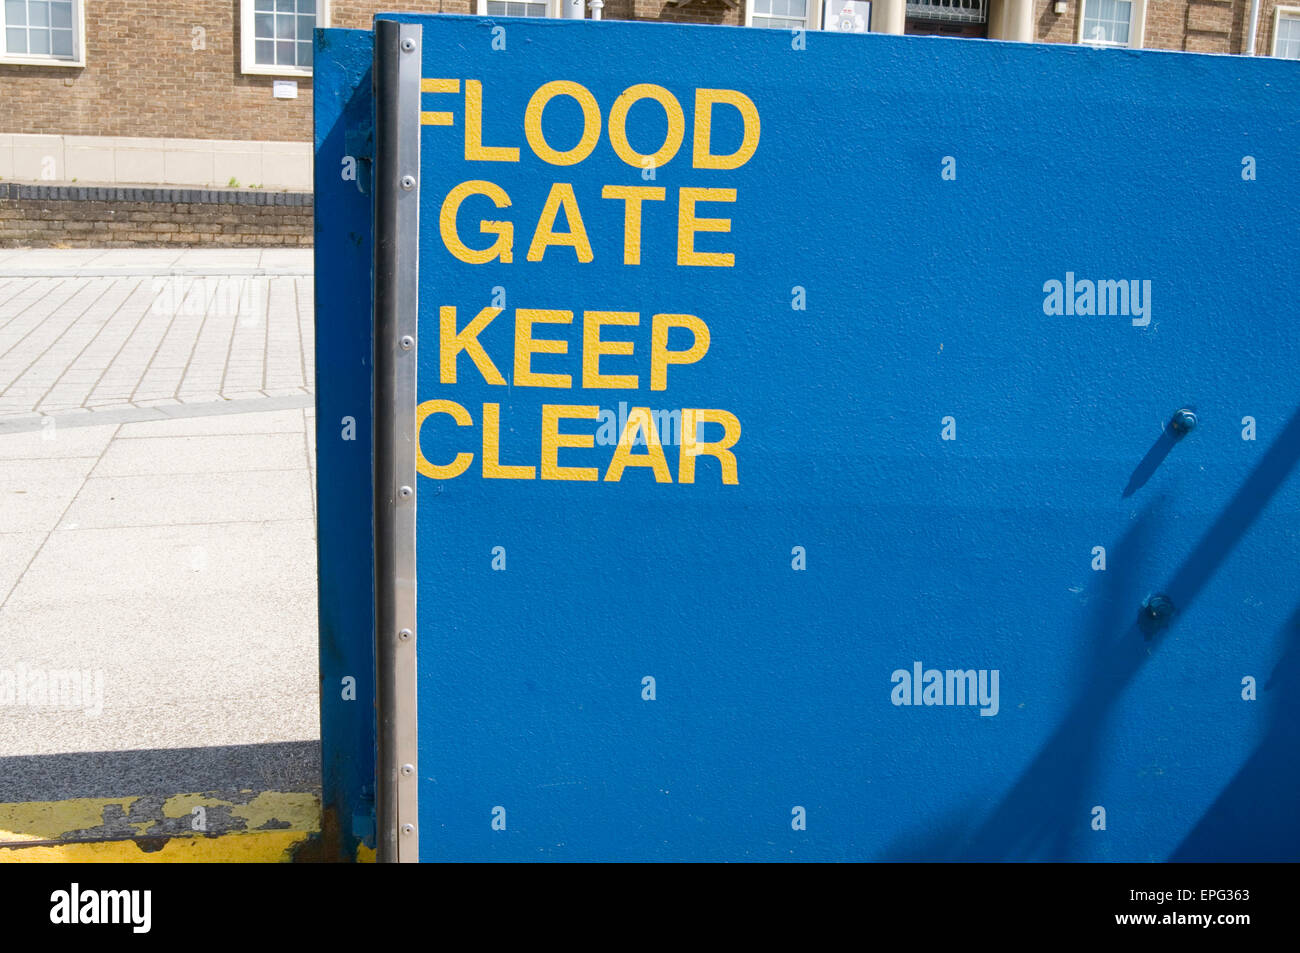 L'ouverture des portes d'inondation inondations Inondations gate uk immigration migrations défense ouverte immigrants Immigrants migrants migrants policy Banque D'Images